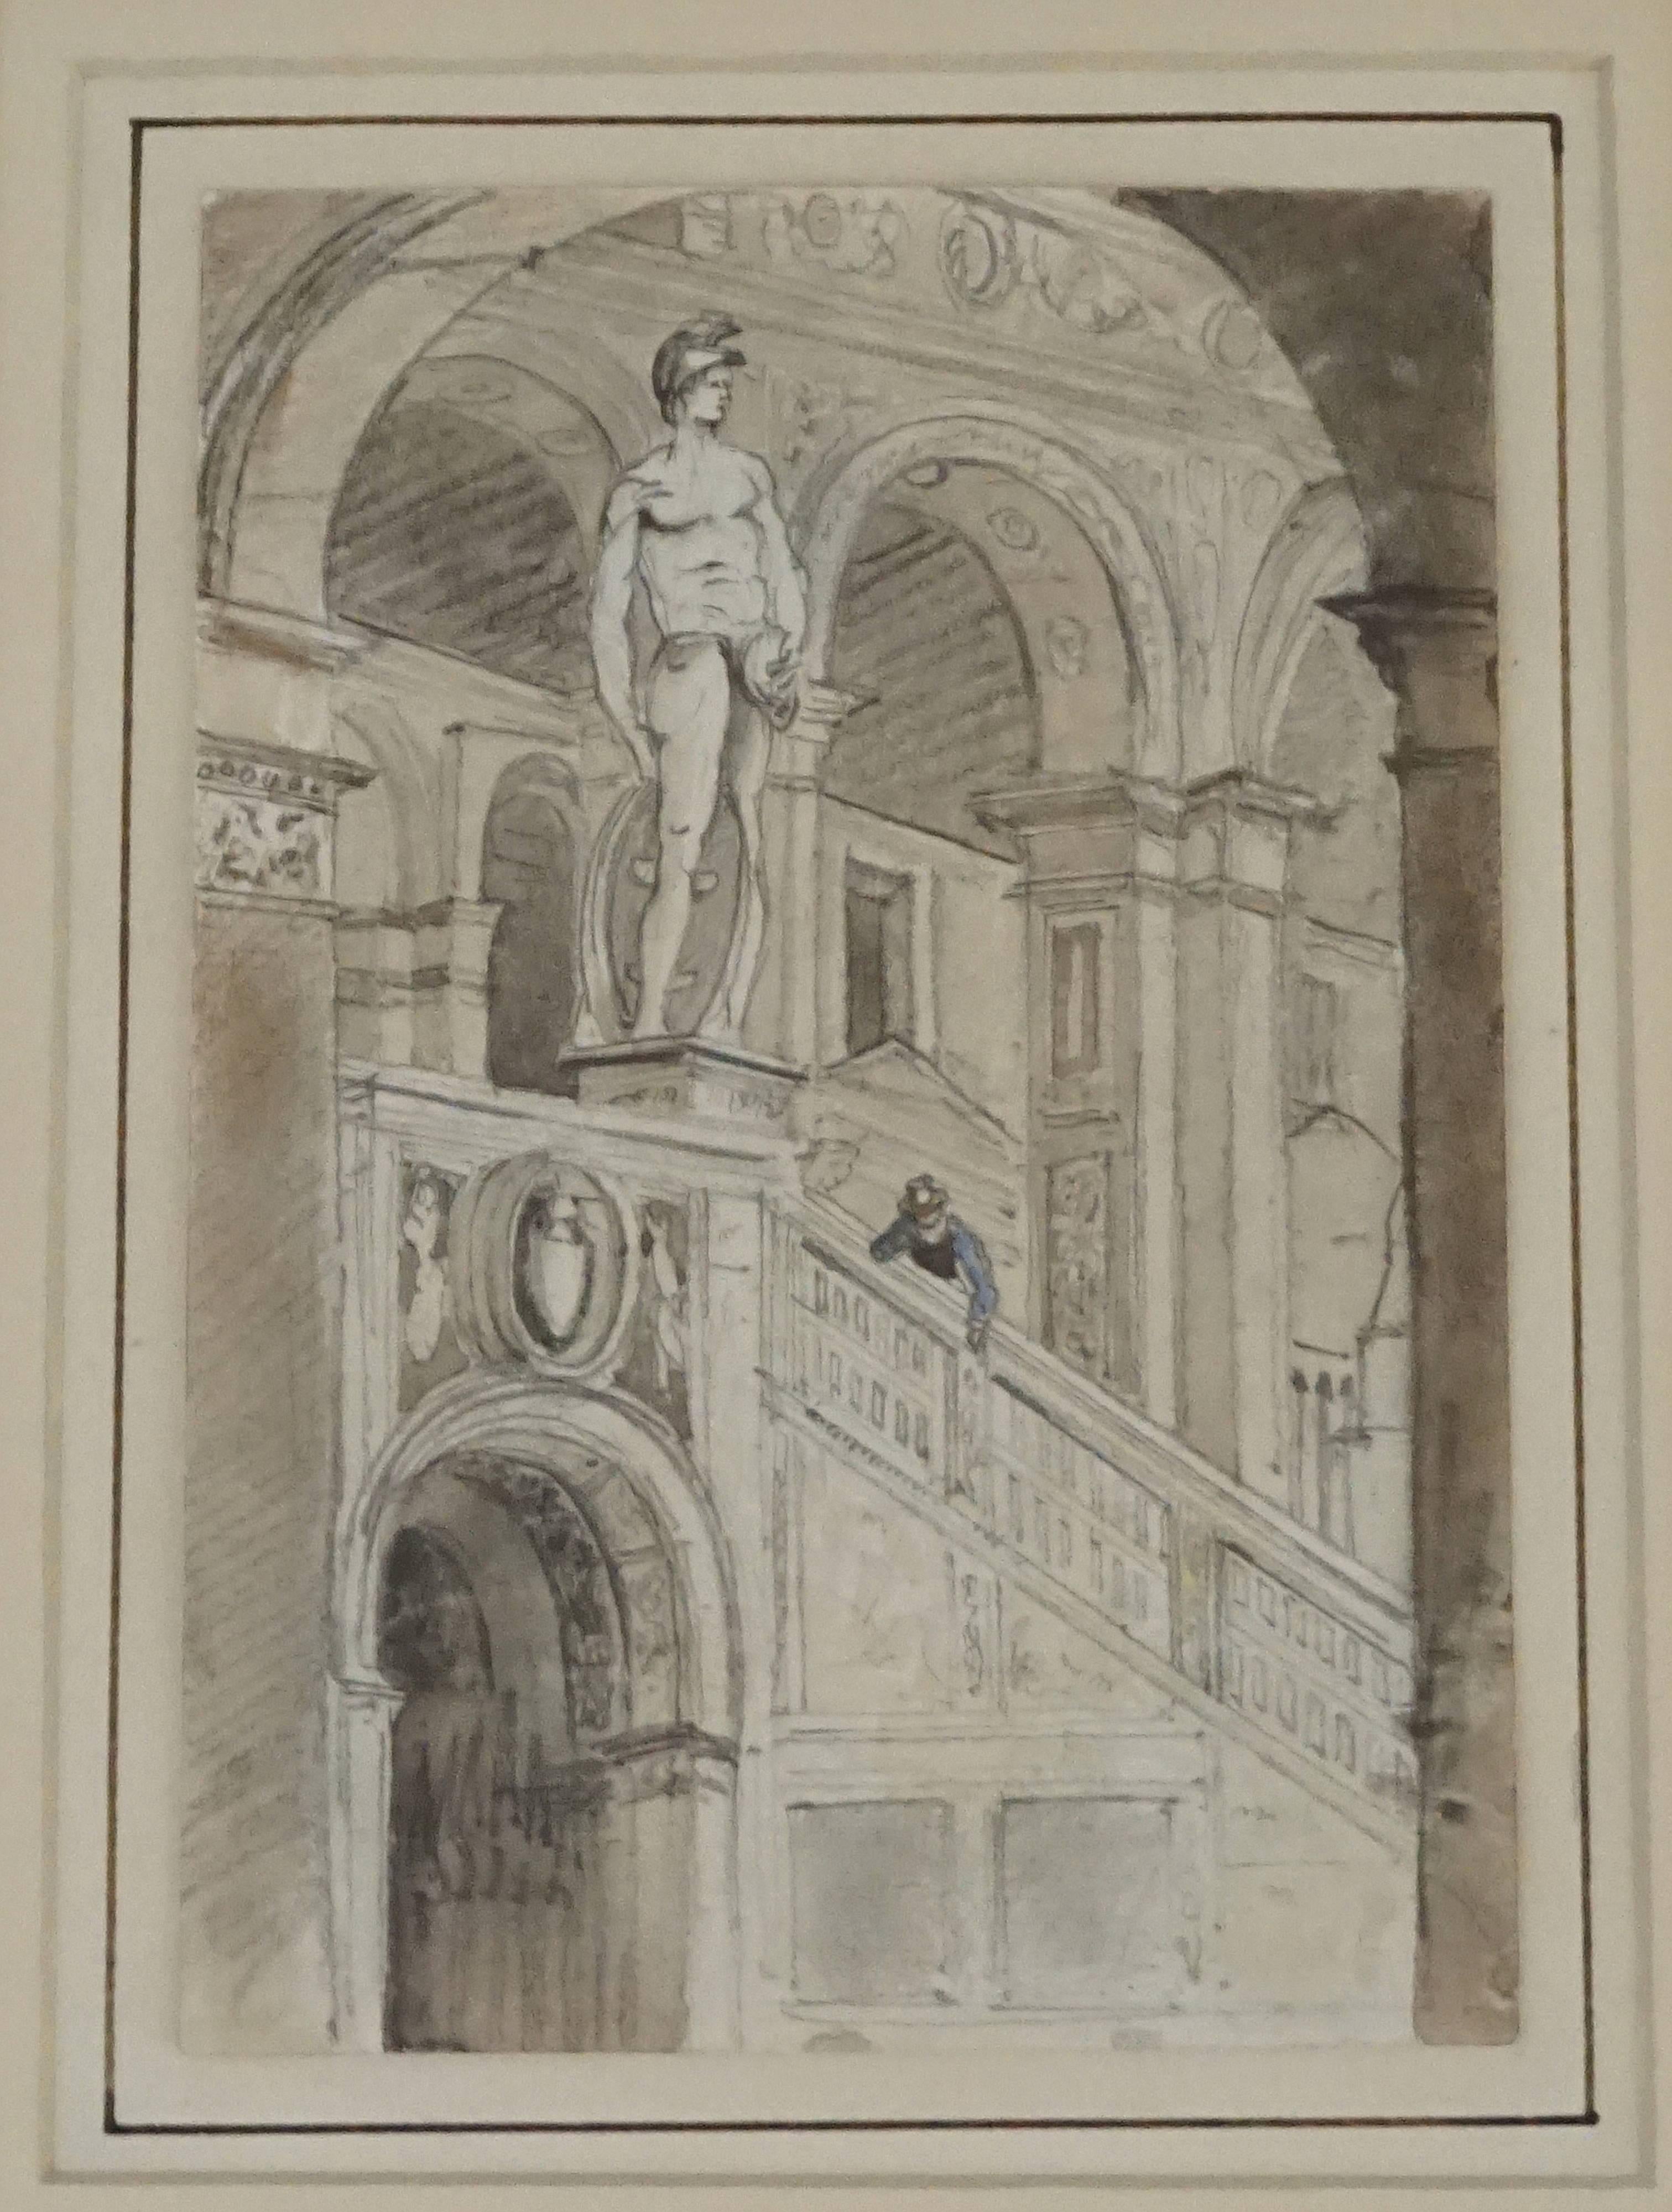 Grand Tour Kohle und Aquarell Zeichnung von einem englischen Touristen in Italien ausgeführt, um 1800, die einen Gentleman späht über eine Treppe Balustrade in einem barocken Interieur von Bögen und Statuen umgeben; Erhaltung Doppel Französisch in